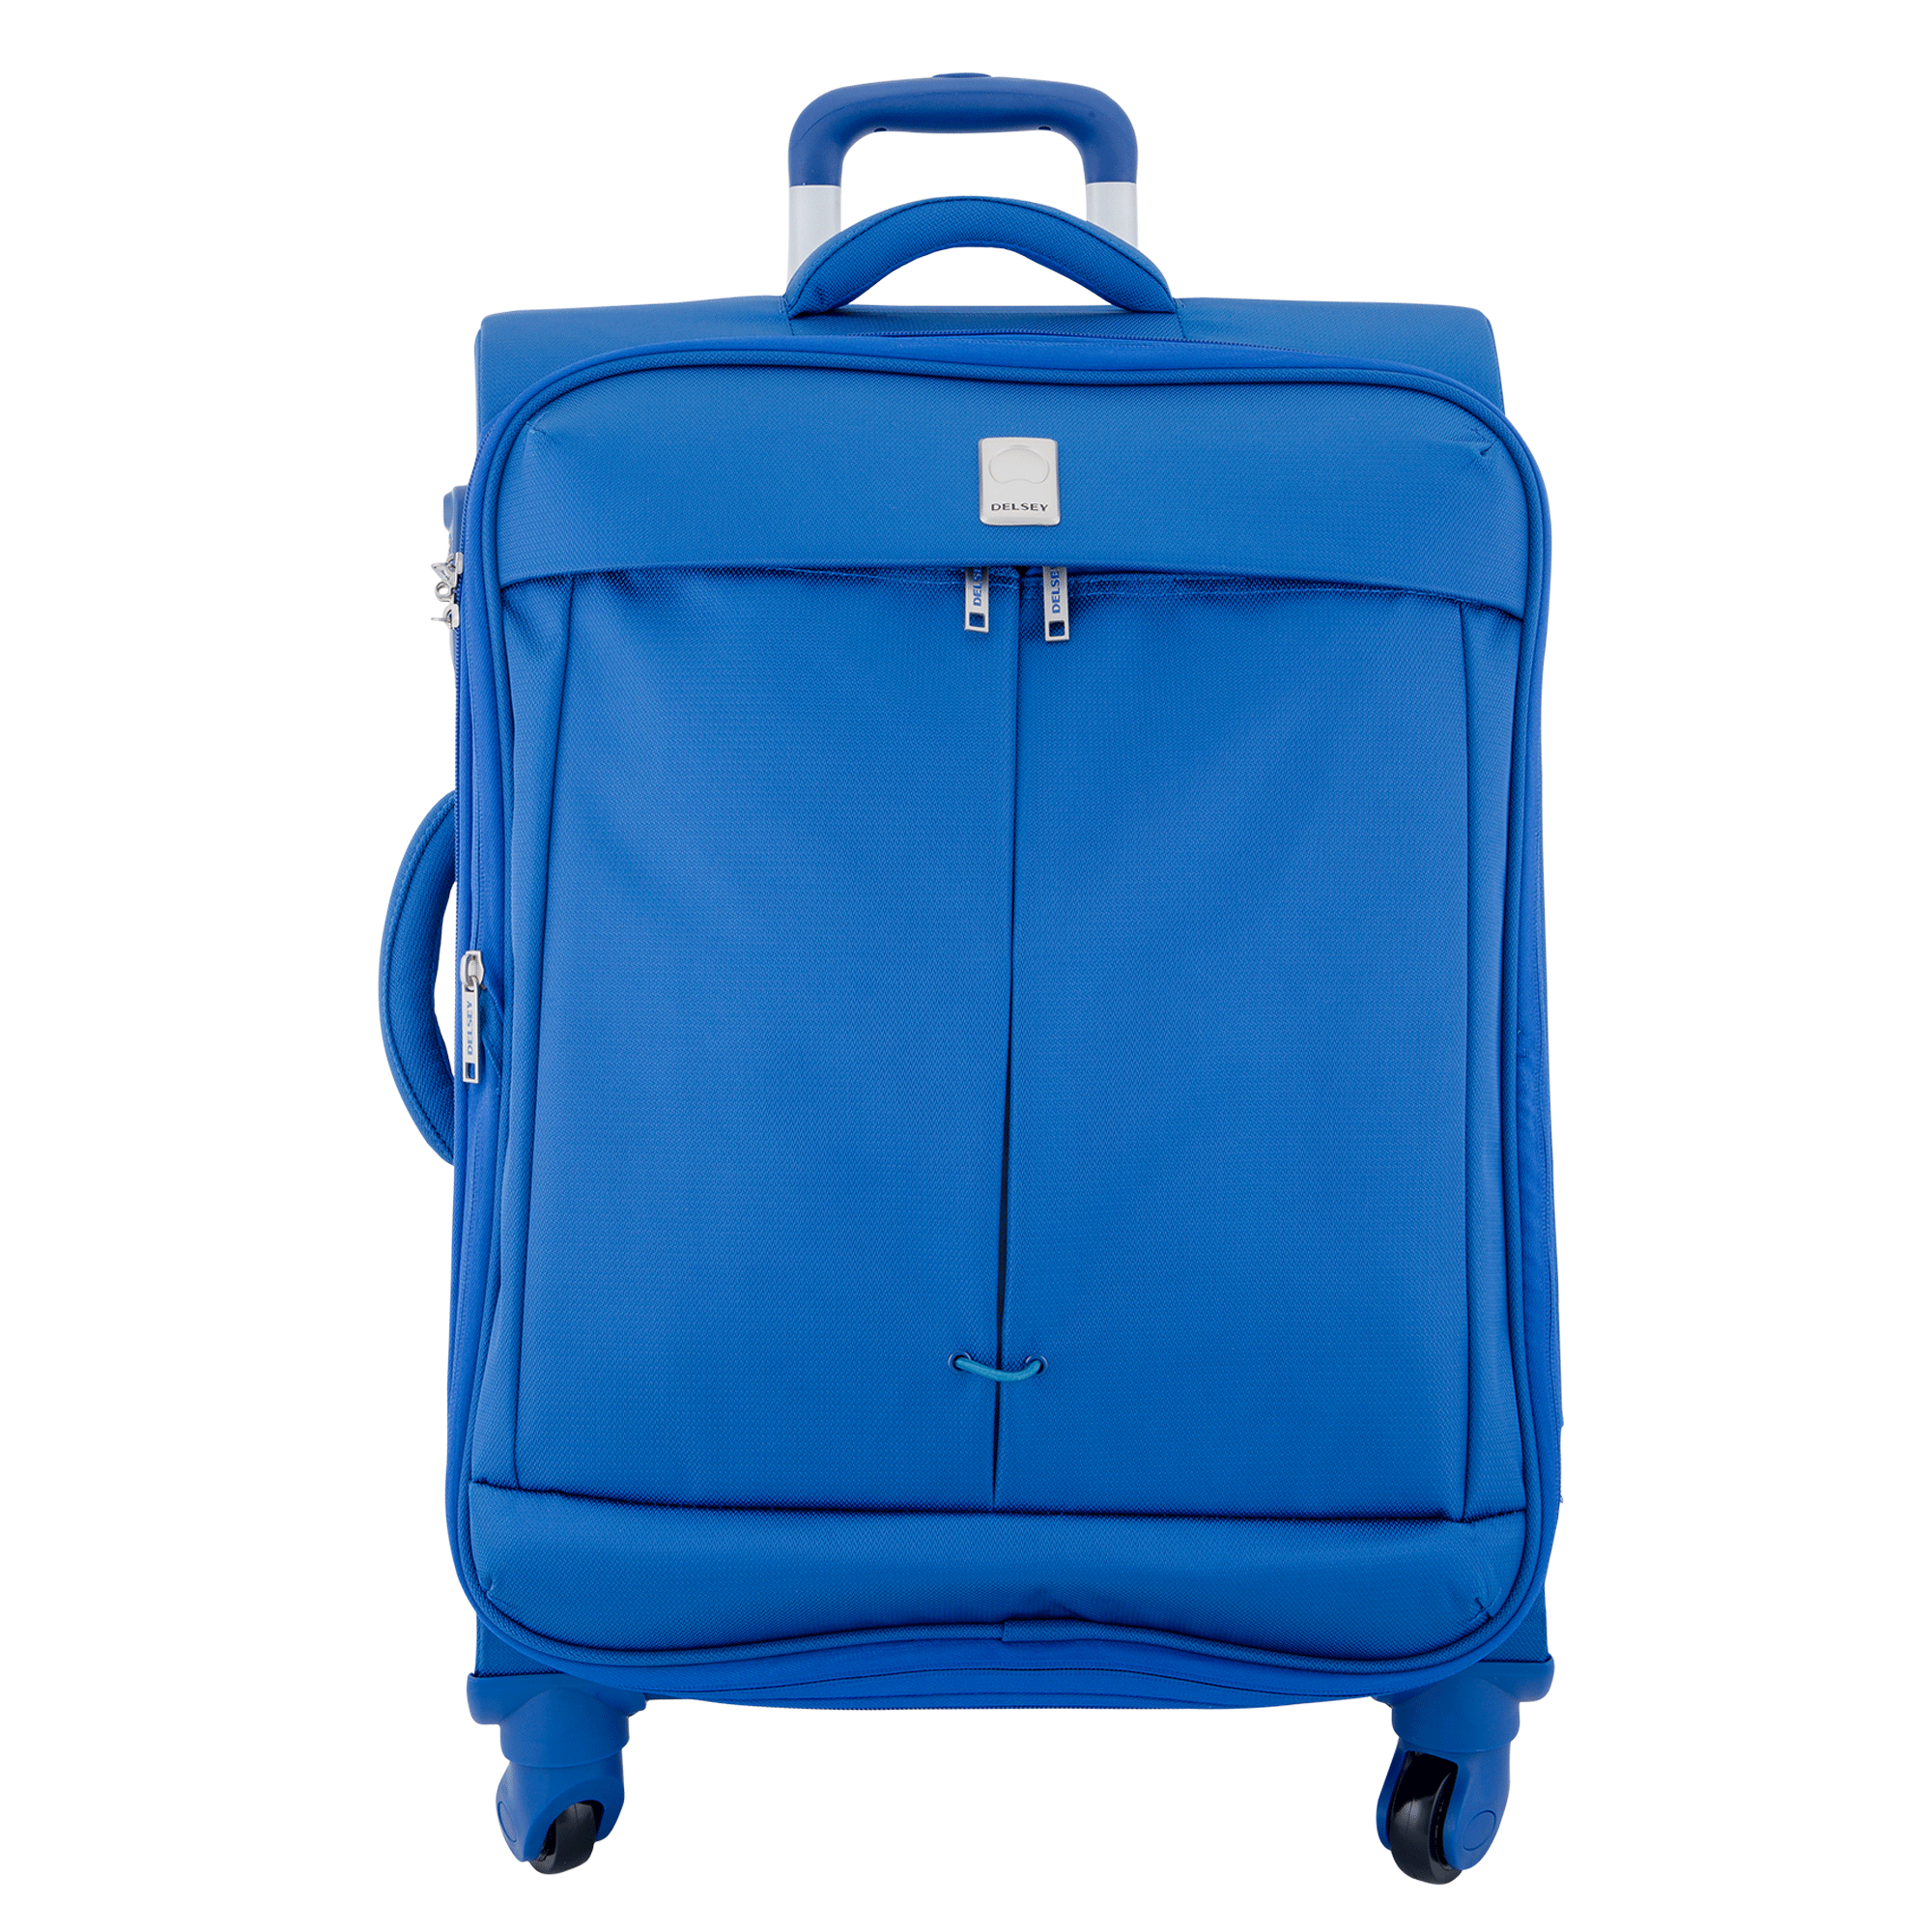 خرید چمدان مسافرتی دلسی پاریس مدل فلایت سایز کابین رنگ آبی دلسی ایران -DELSEY PARIS  FLIGHT  00023480112 delseyiran